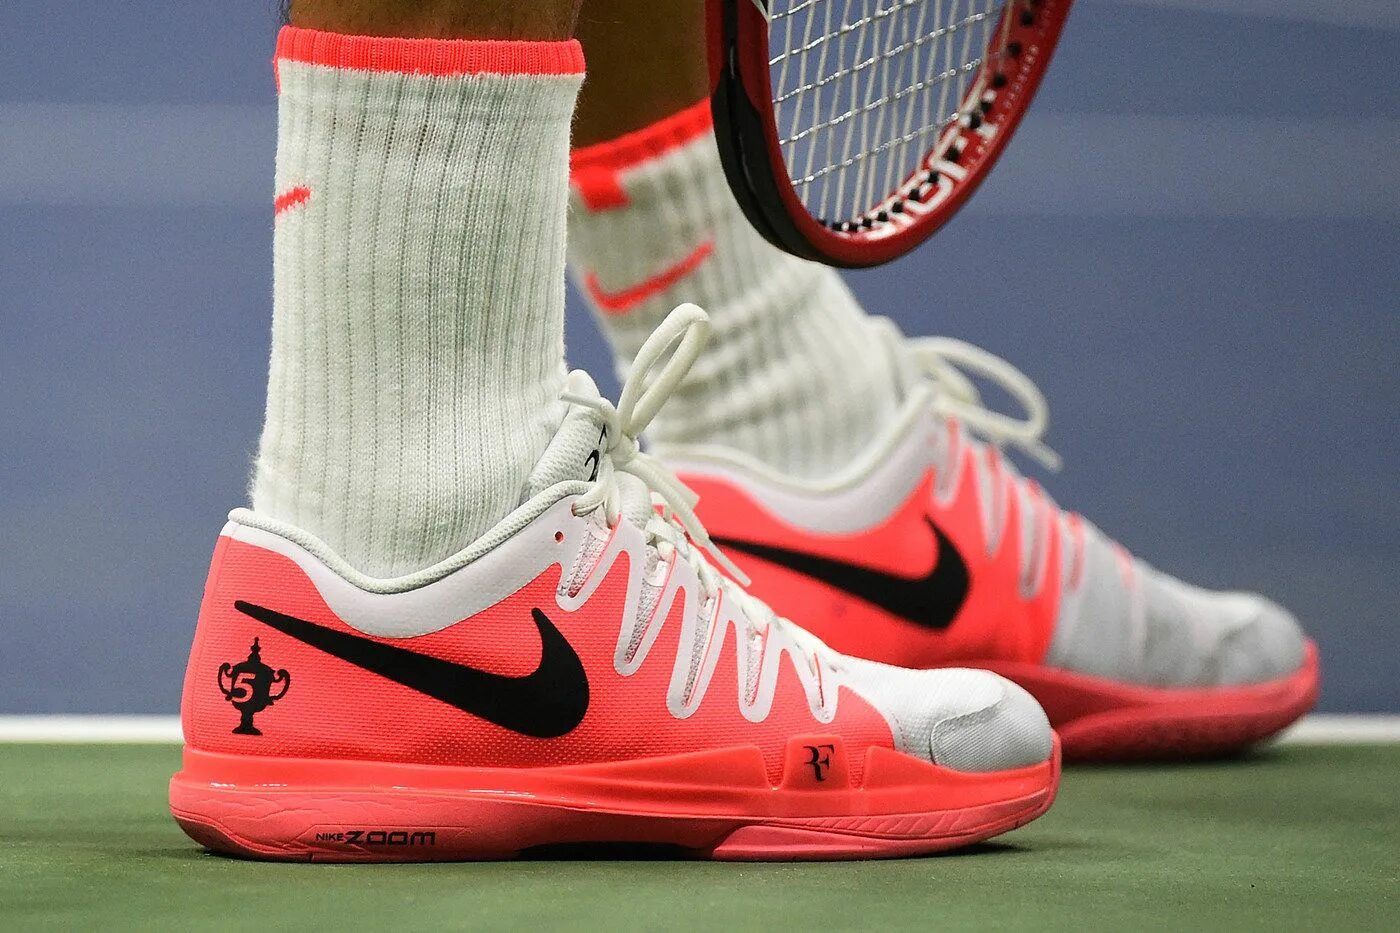 Nike Shoes. Обувь для тенниса Nike. Nike Tennis Shoe Boots. Найк теннис